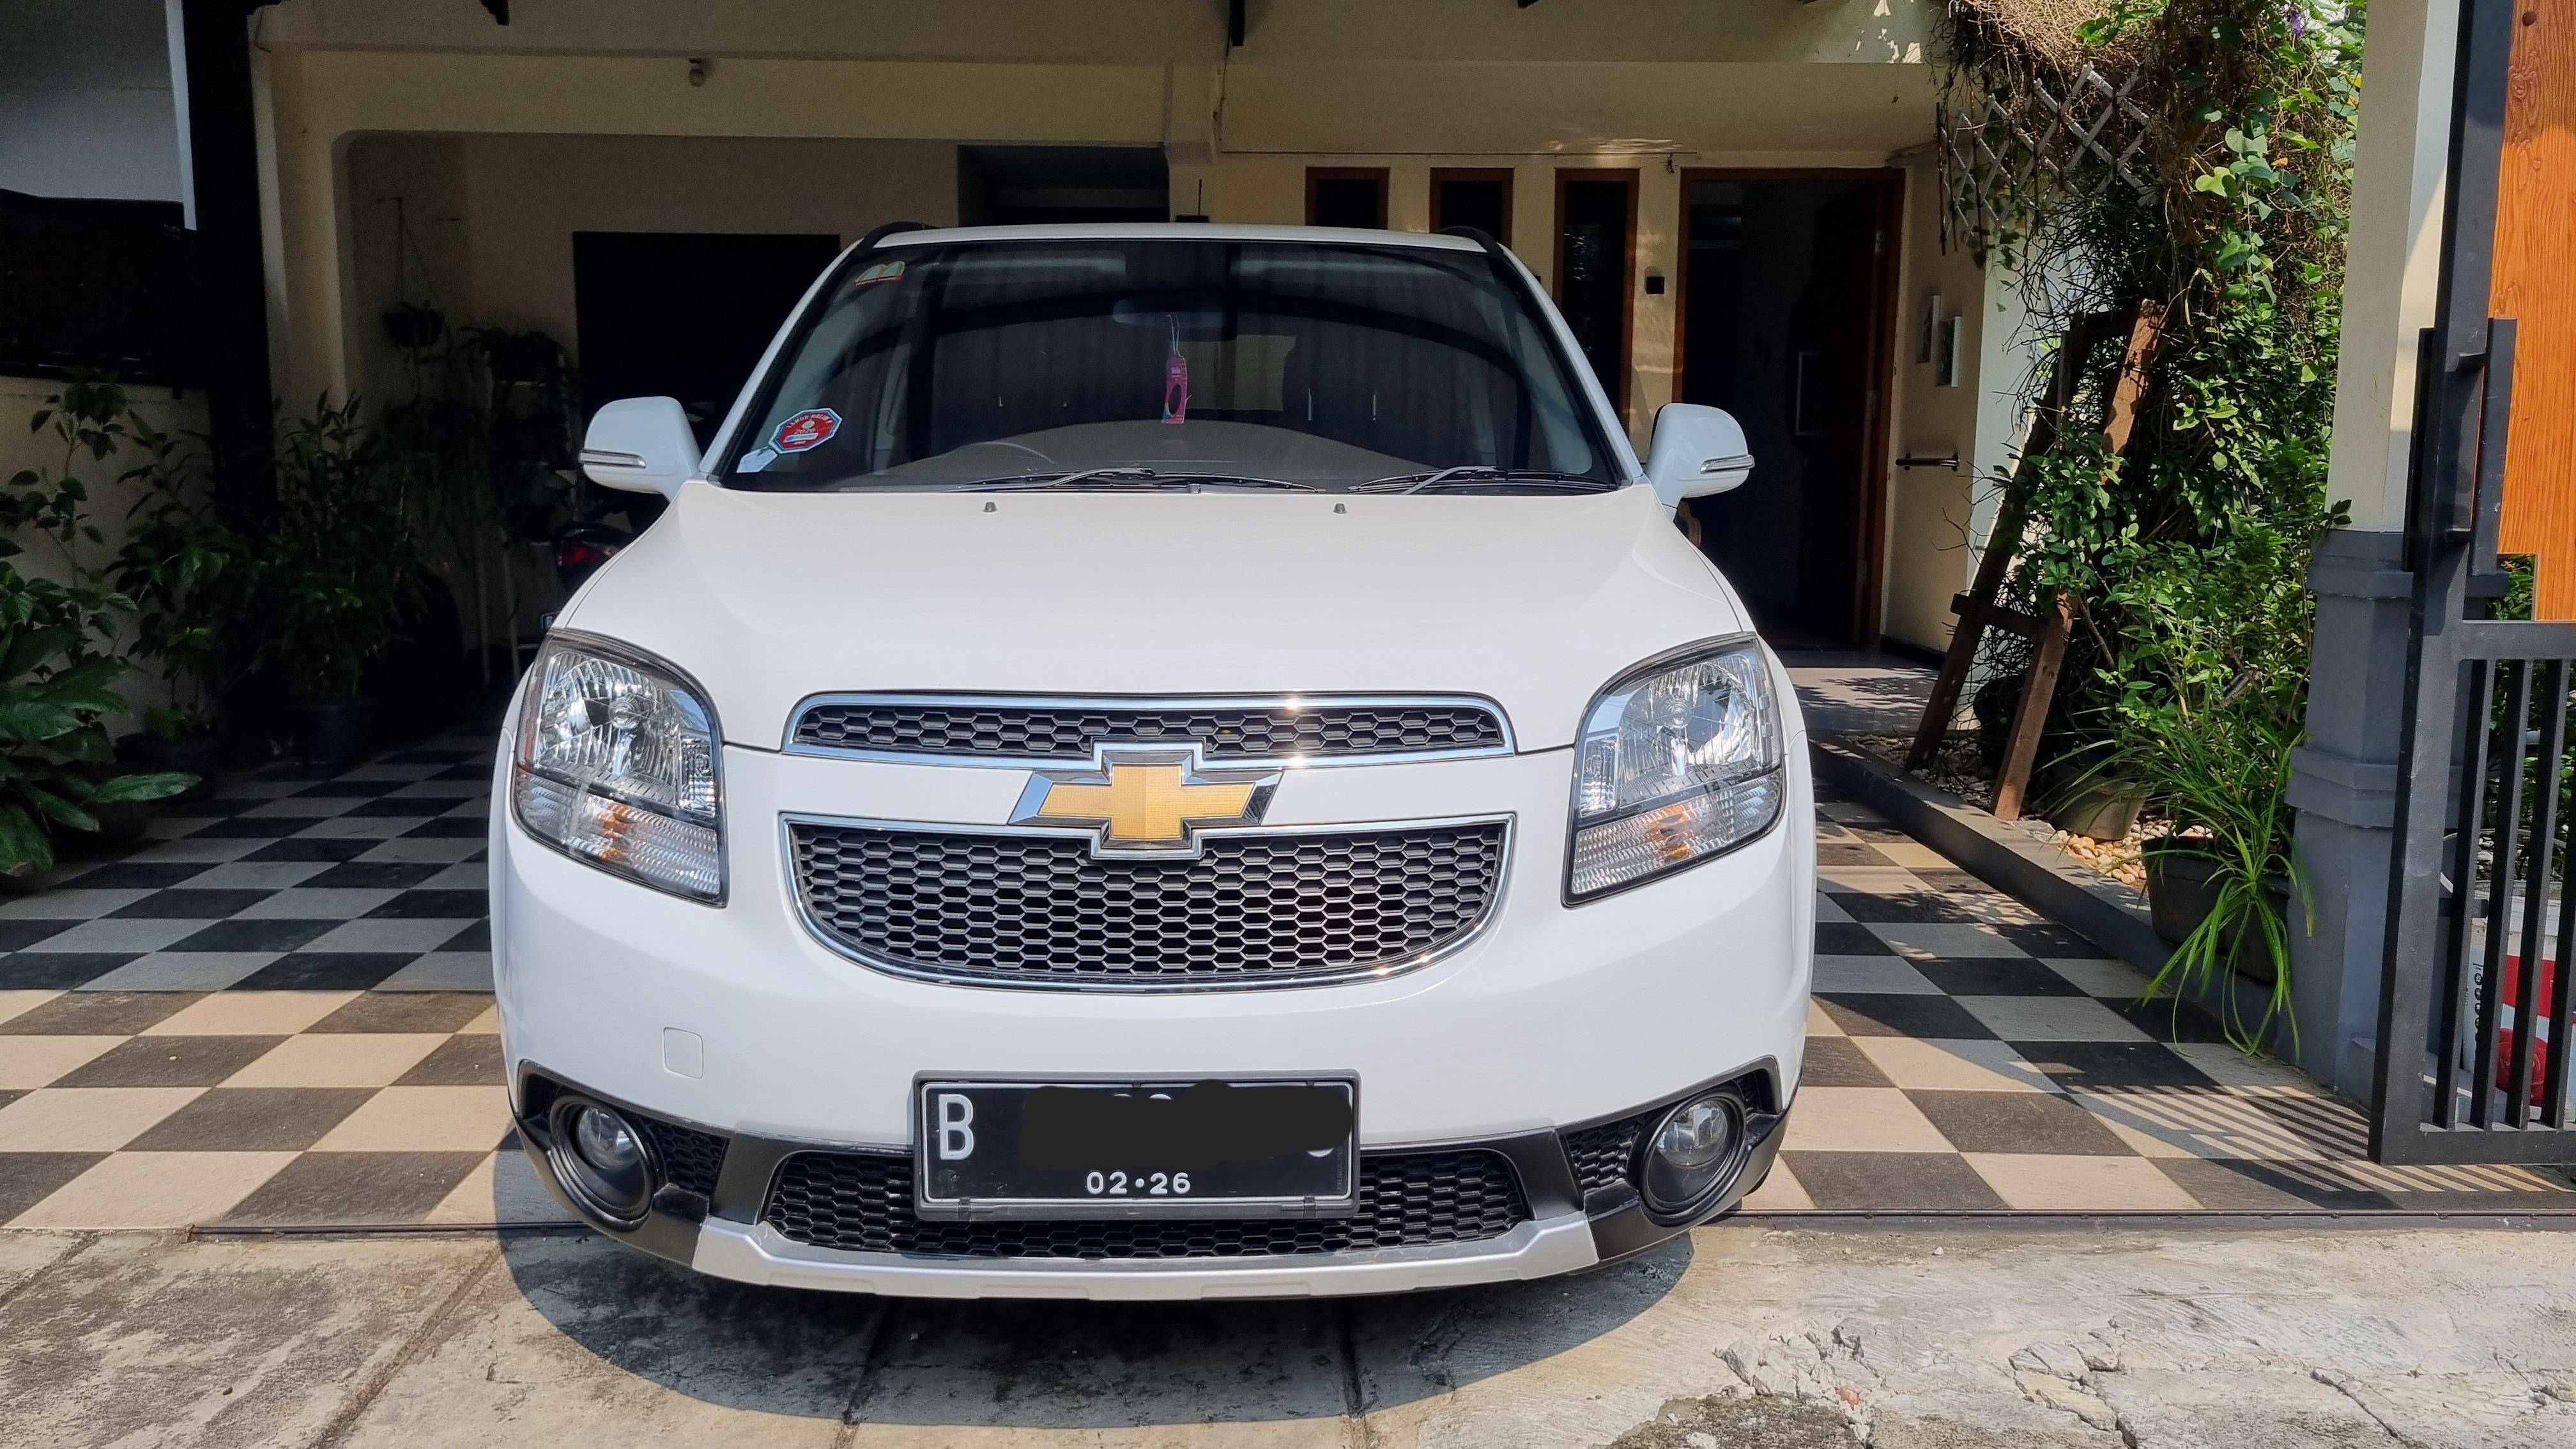 2015 Chevrolet Orlando 1.8 LT AT 1.8 LT AT bekas